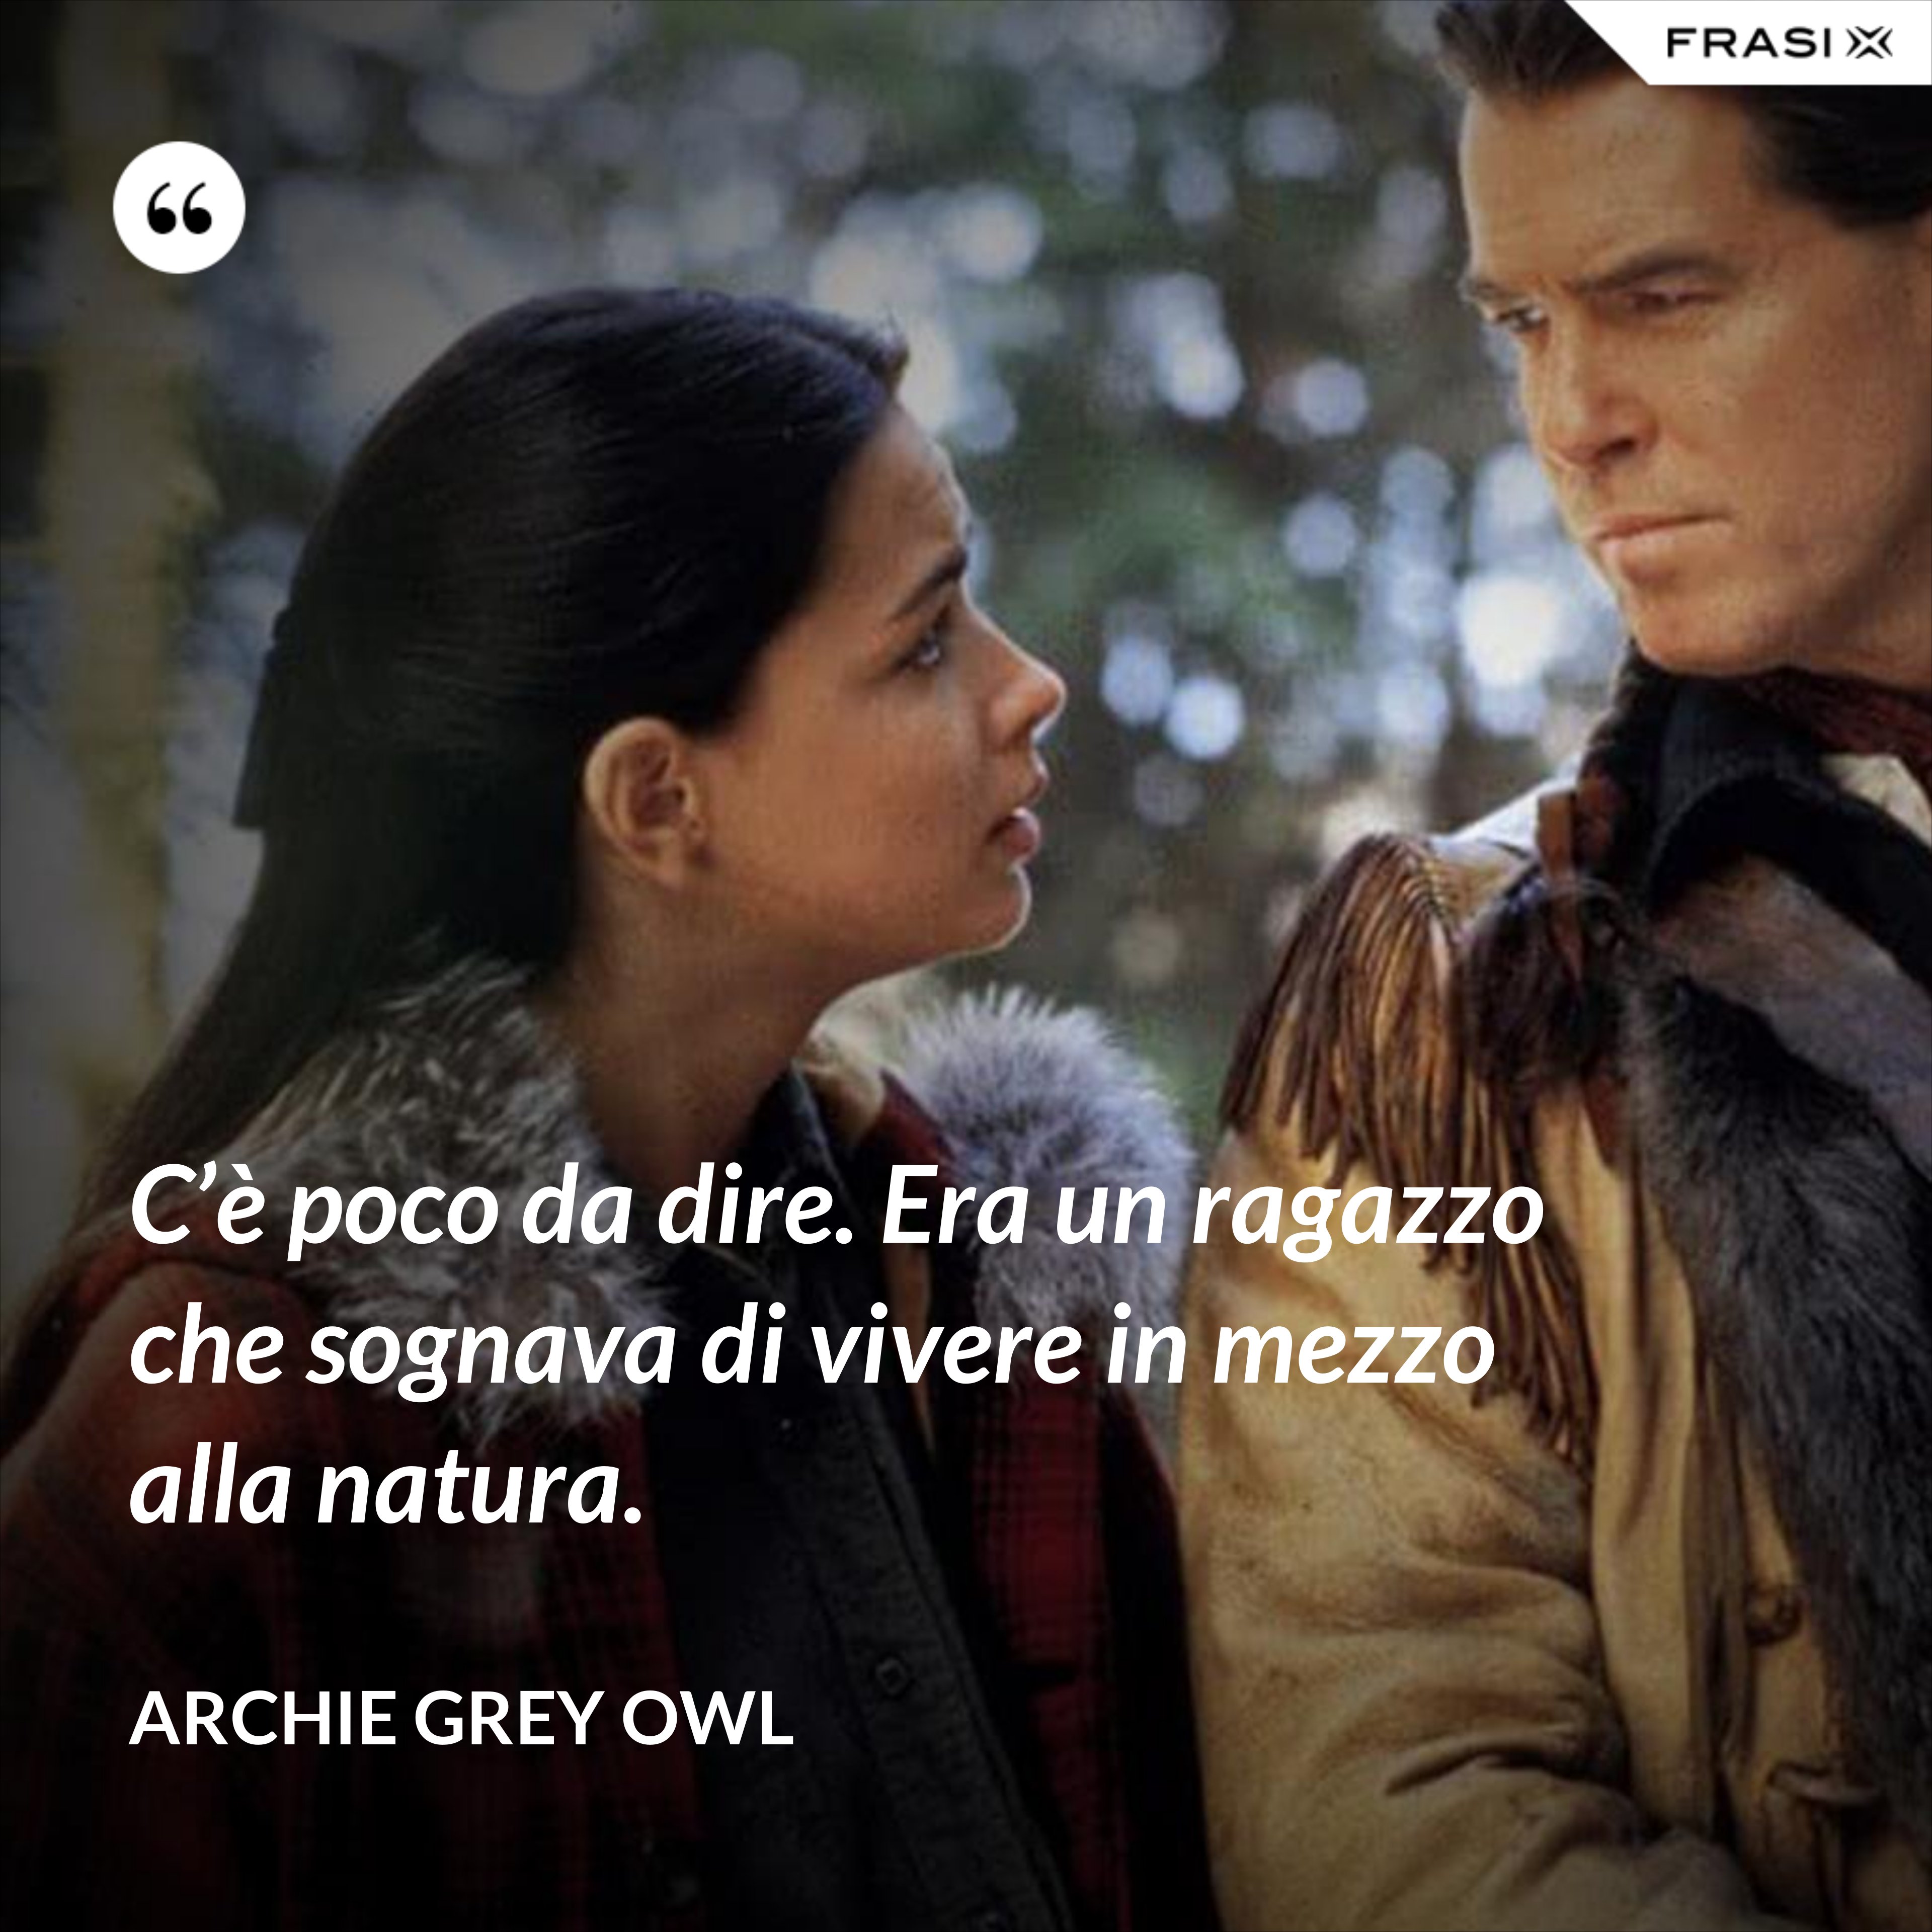 C’è poco da dire. Era un ragazzo che sognava di vivere in mezzo alla natura. - Archie Grey Owl